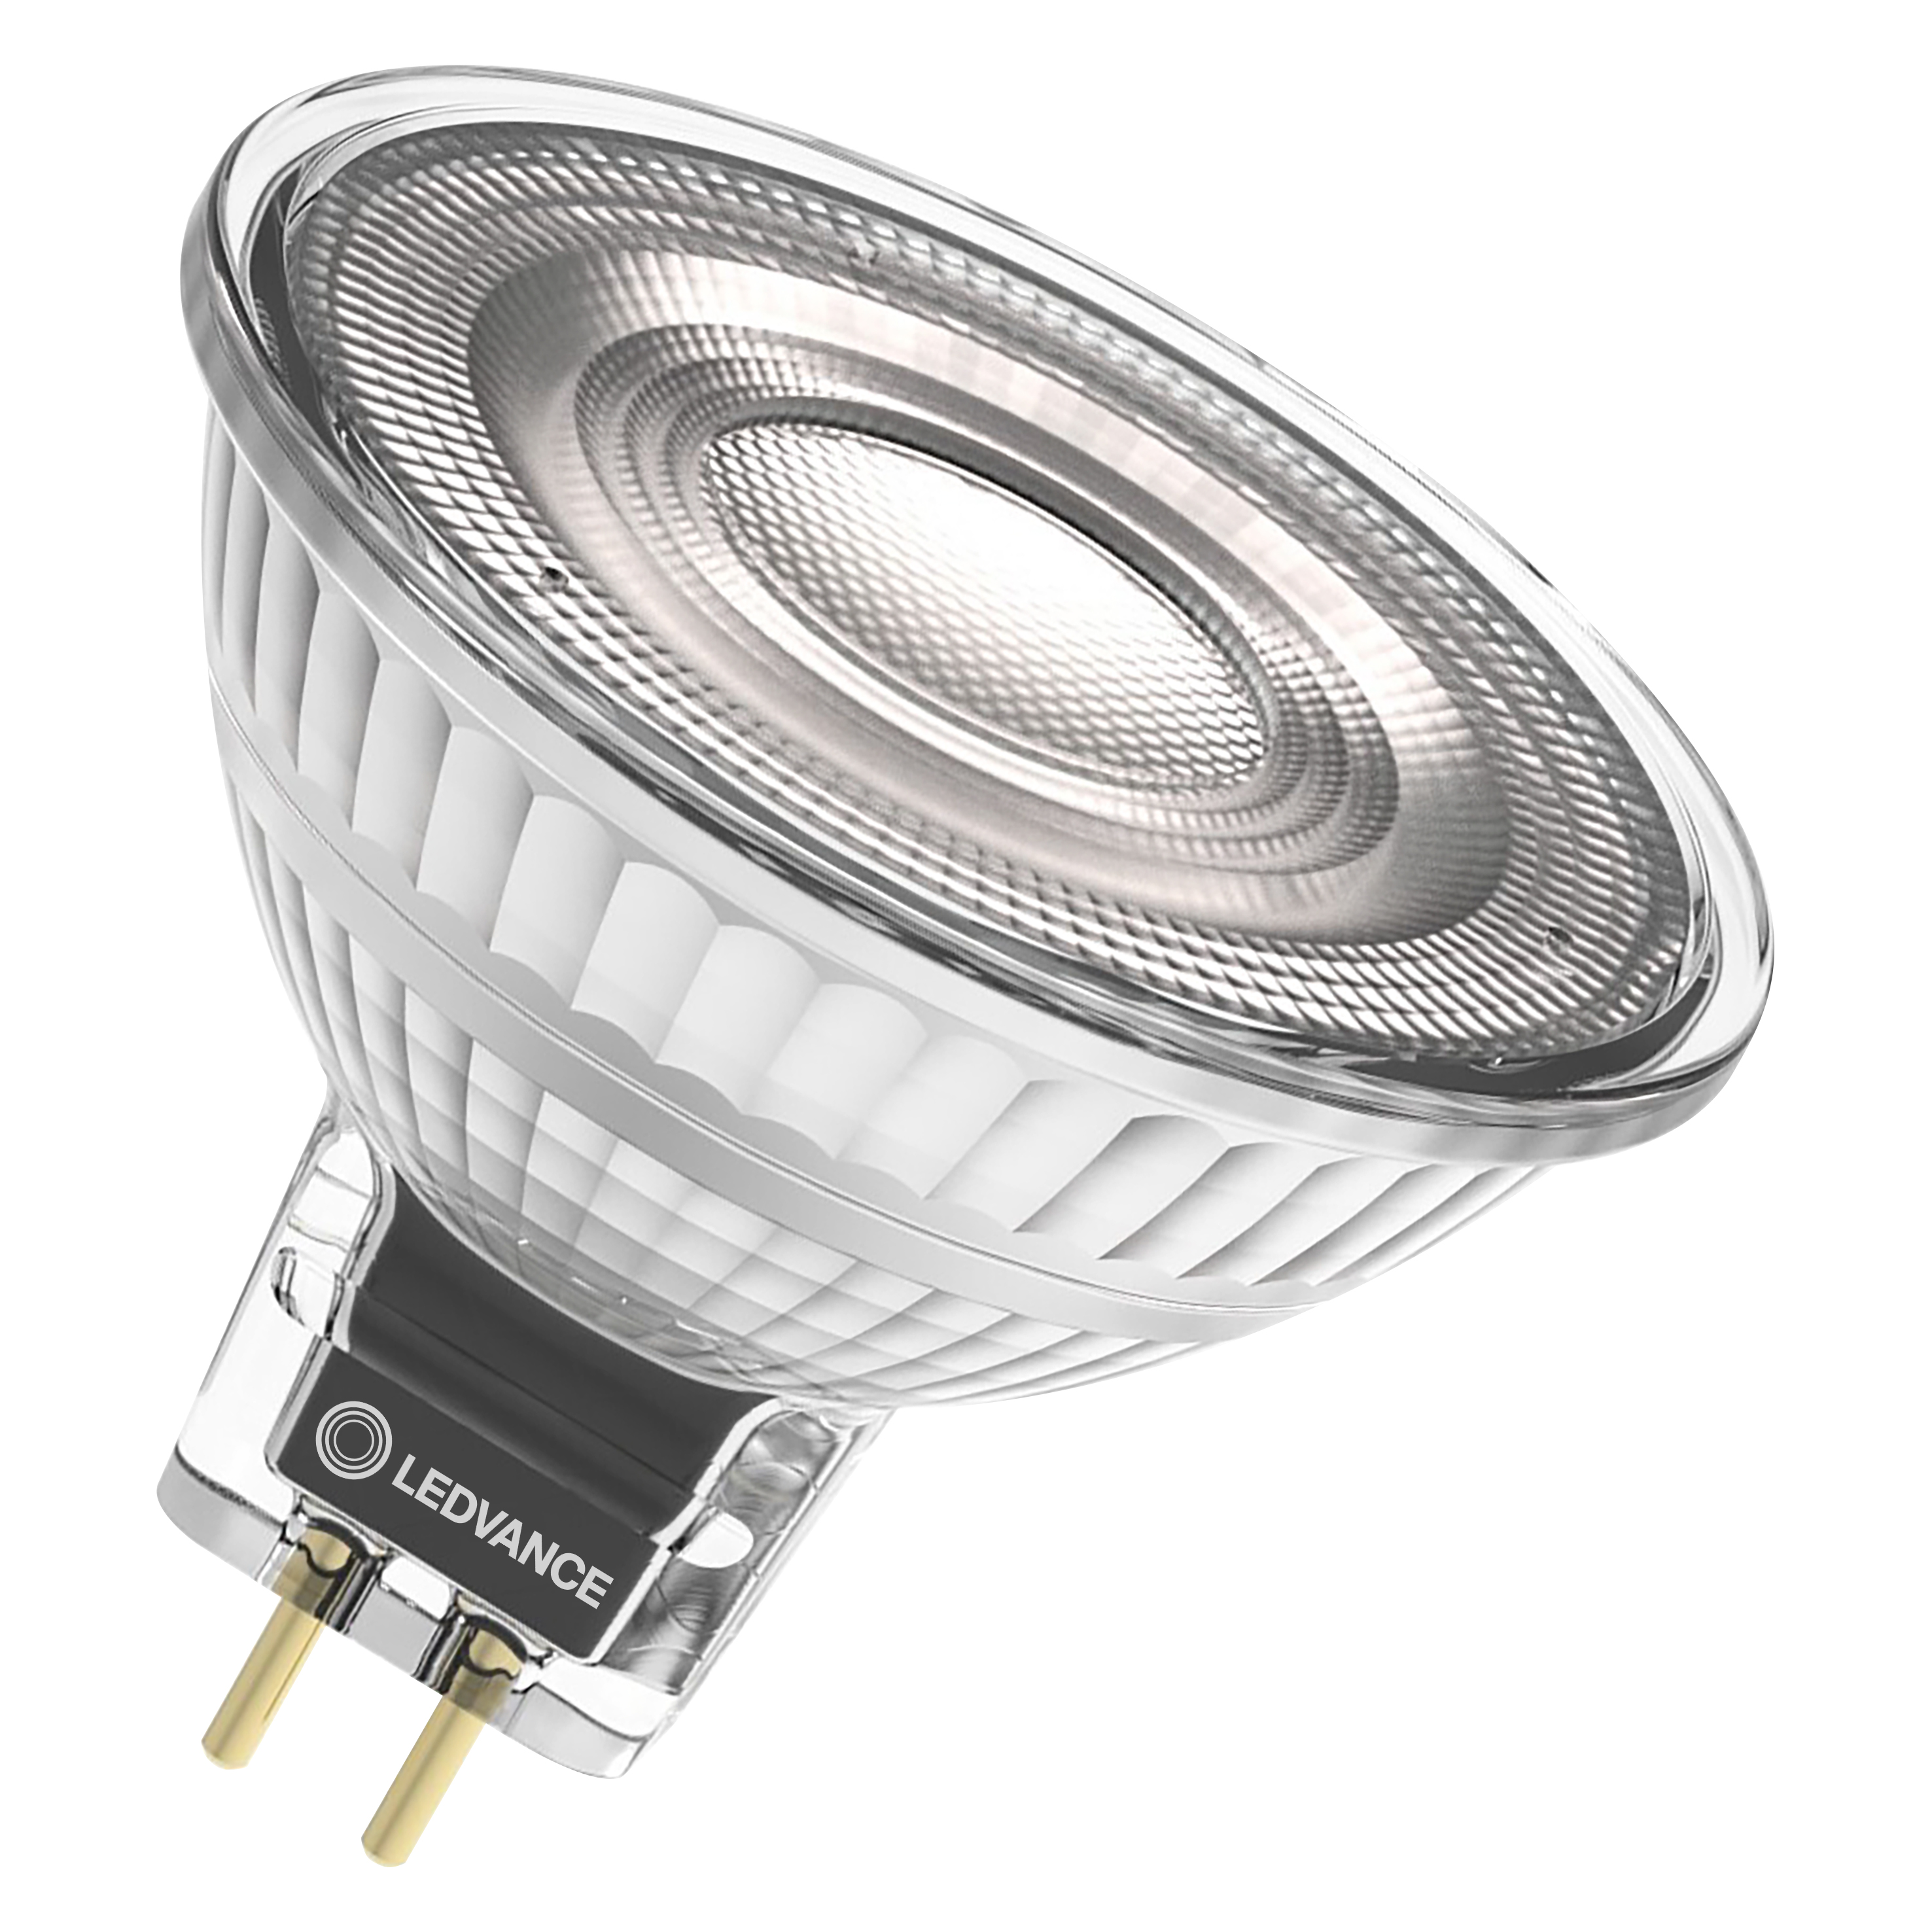 Ledvance LED Reflektorlampe MR16 36 Grad 5 Watt 940 neutralweiß GU5.3 dimmbar